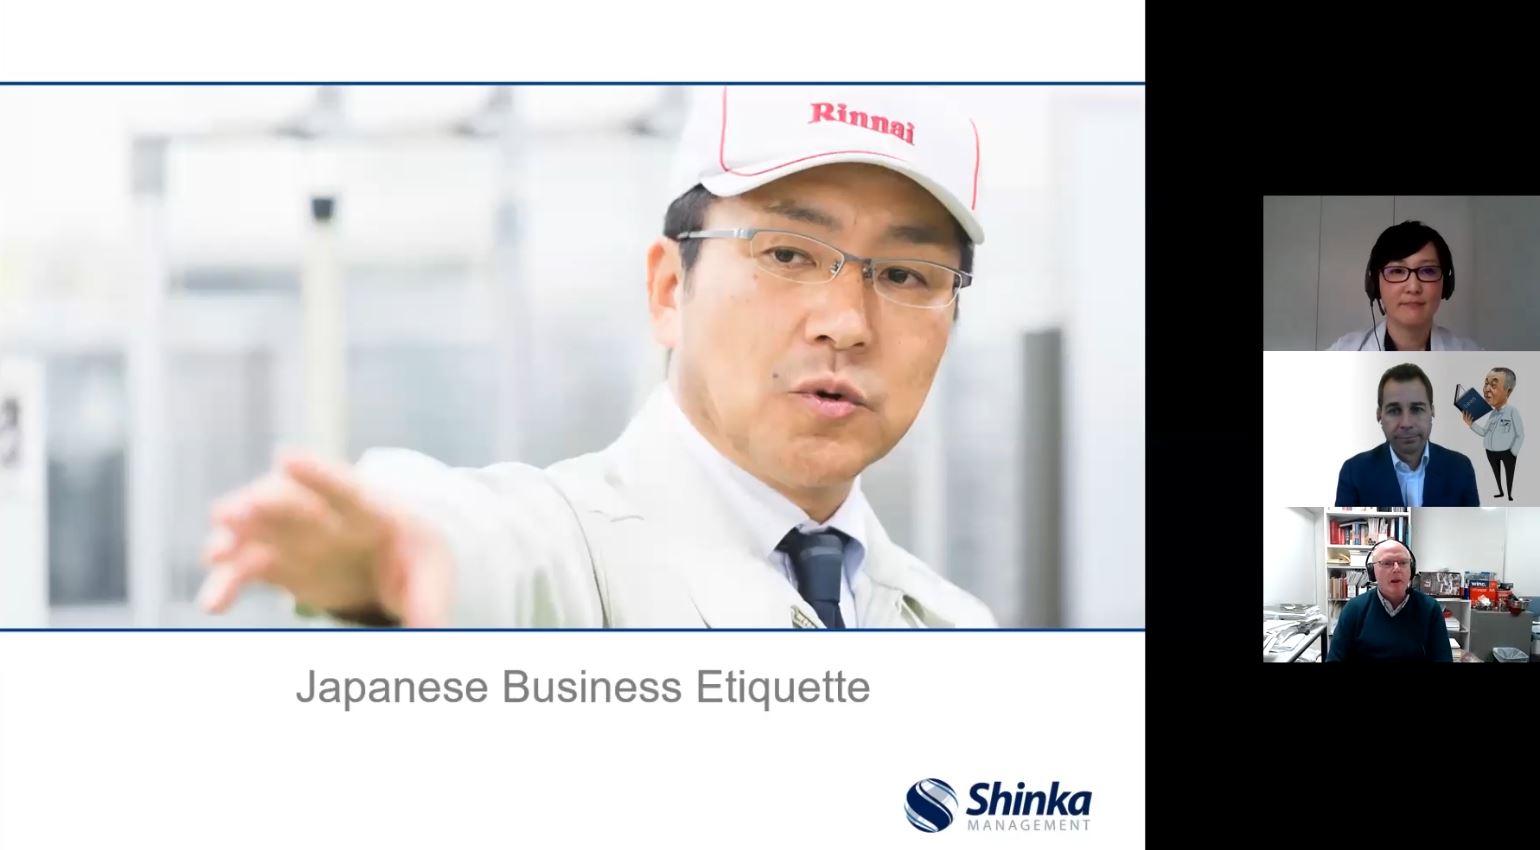 japanese-business-etiquette-training.jpg 